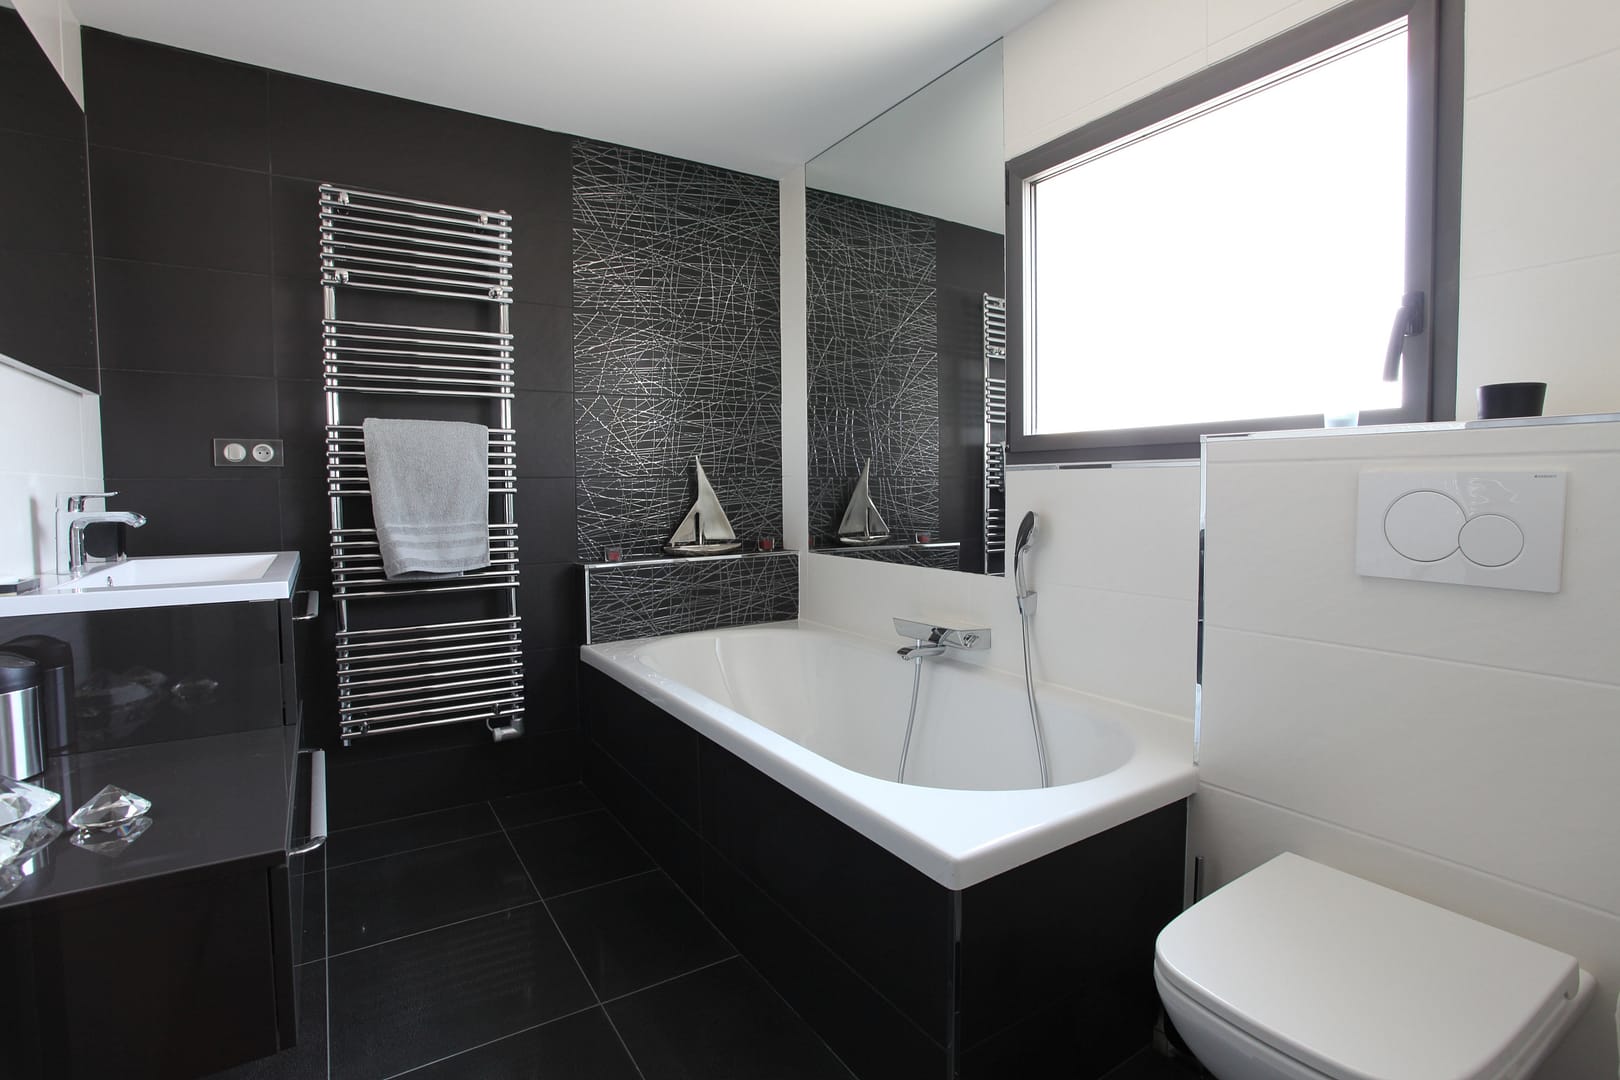 Salle de bain moderne gris noir blanc, avec baignoire